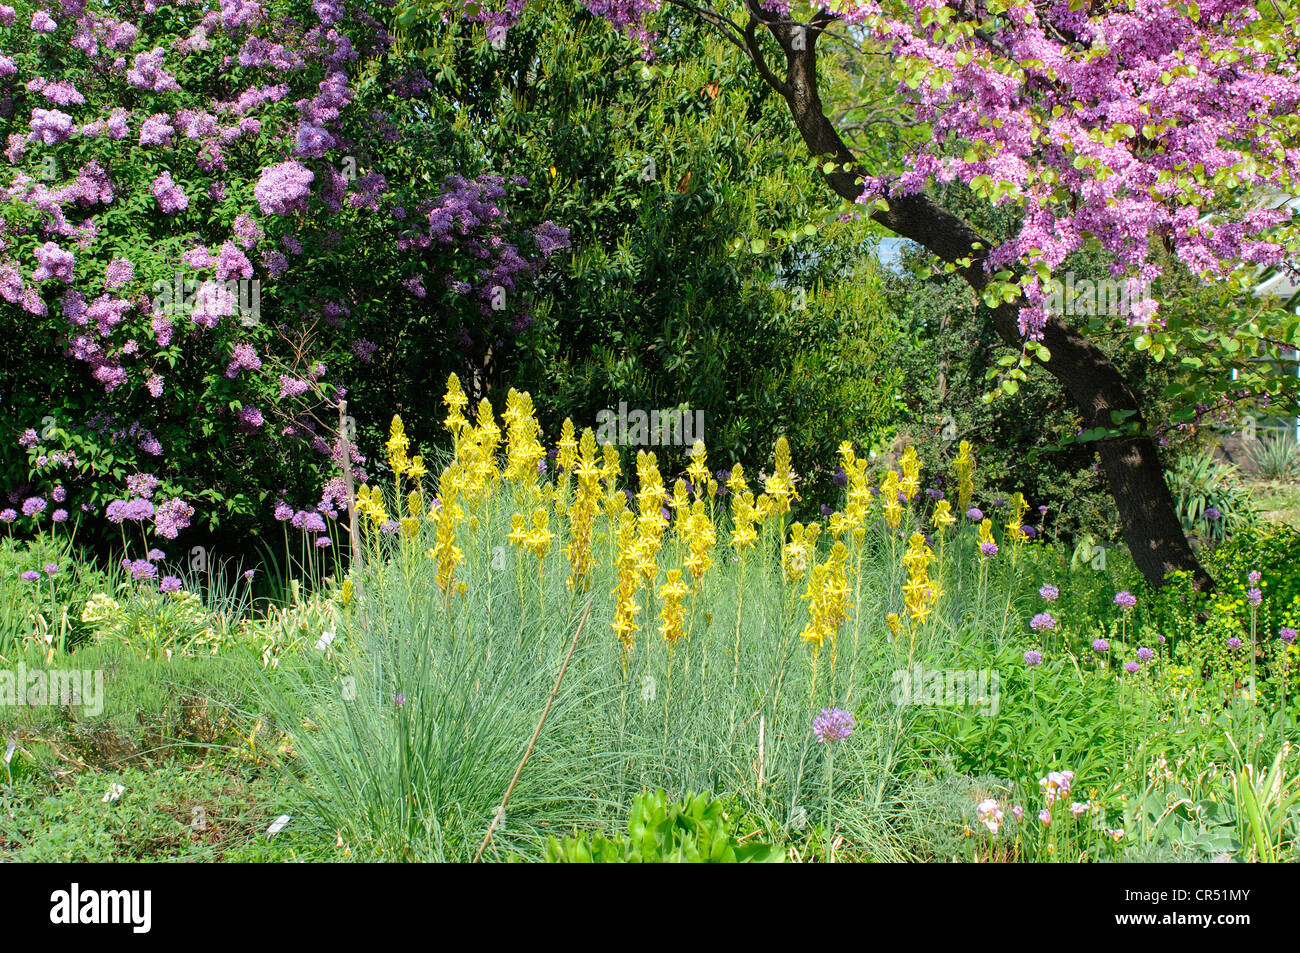 King's Spear (Asphodeline lutea), Berggarten, alpine garden, Hannover, Hanover, Lower Saxony, Germany, Europe Stock Photo